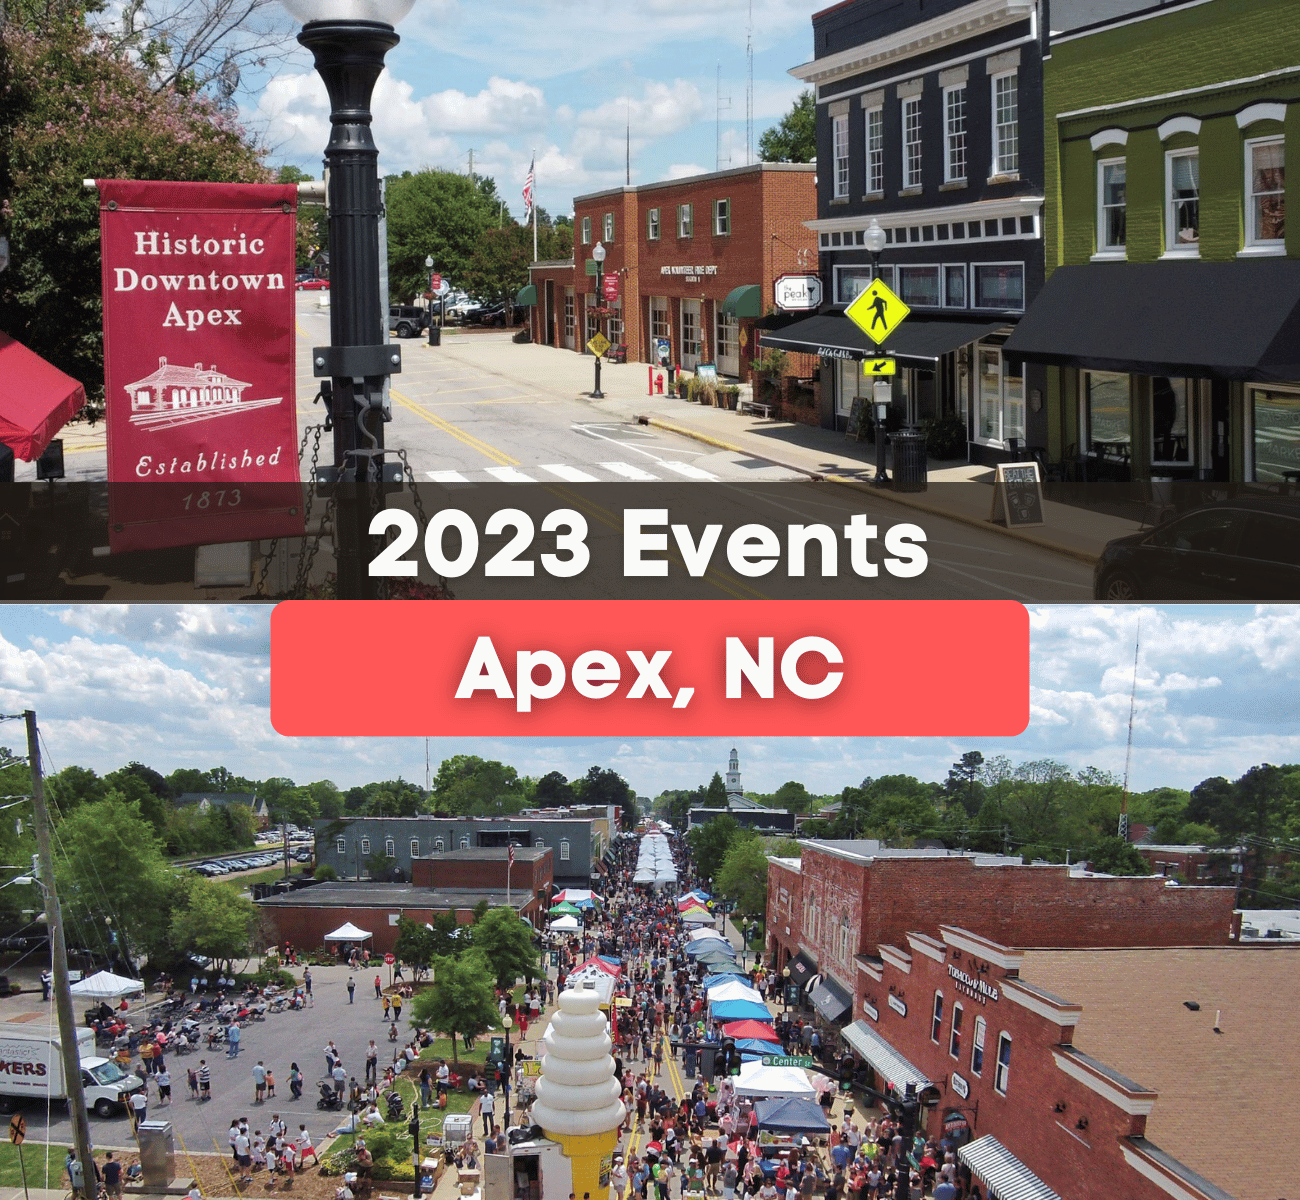 9 Fun Events In Apex, NC in 2023